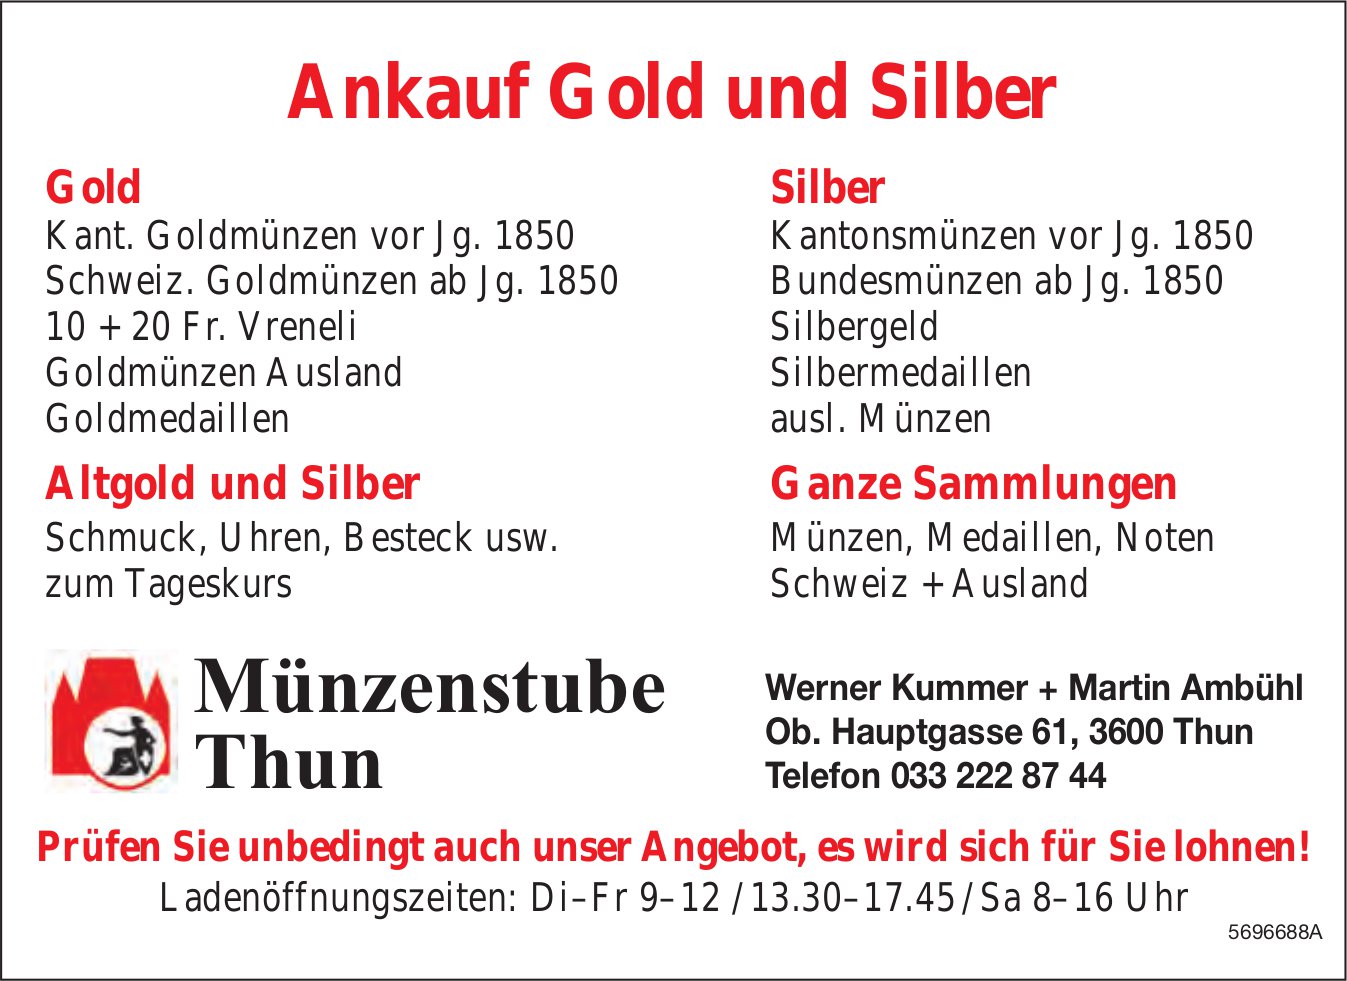 Münzenstube, Thun - Ankauf Gold und Silber